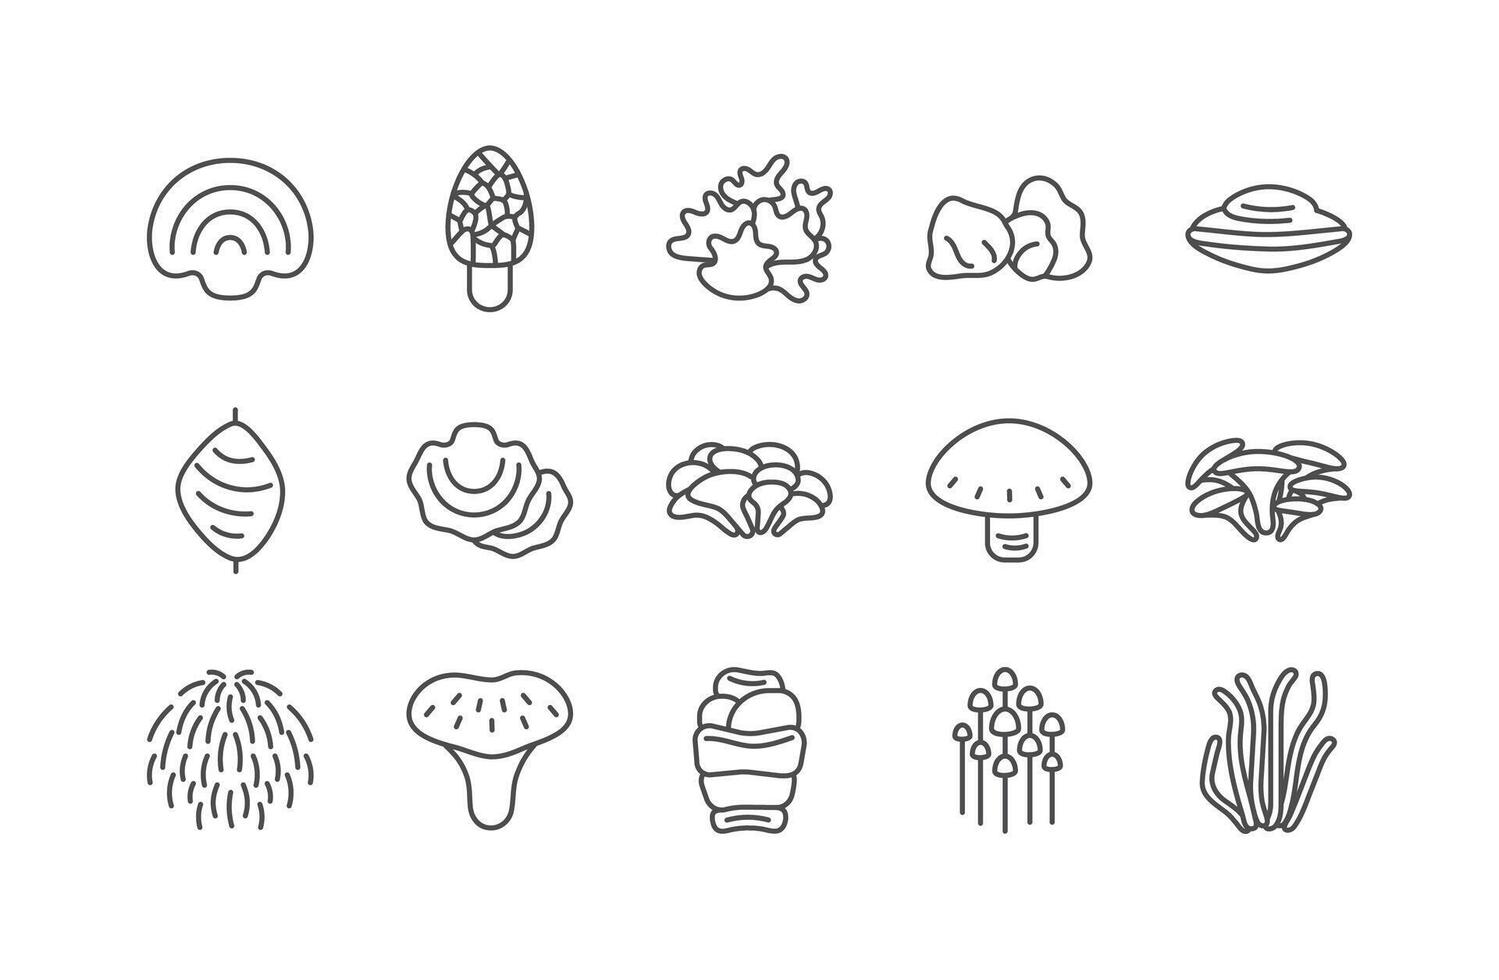 medicinsk svamp linje ikon uppsättning. annorlunda typer av svamp vektor illustration